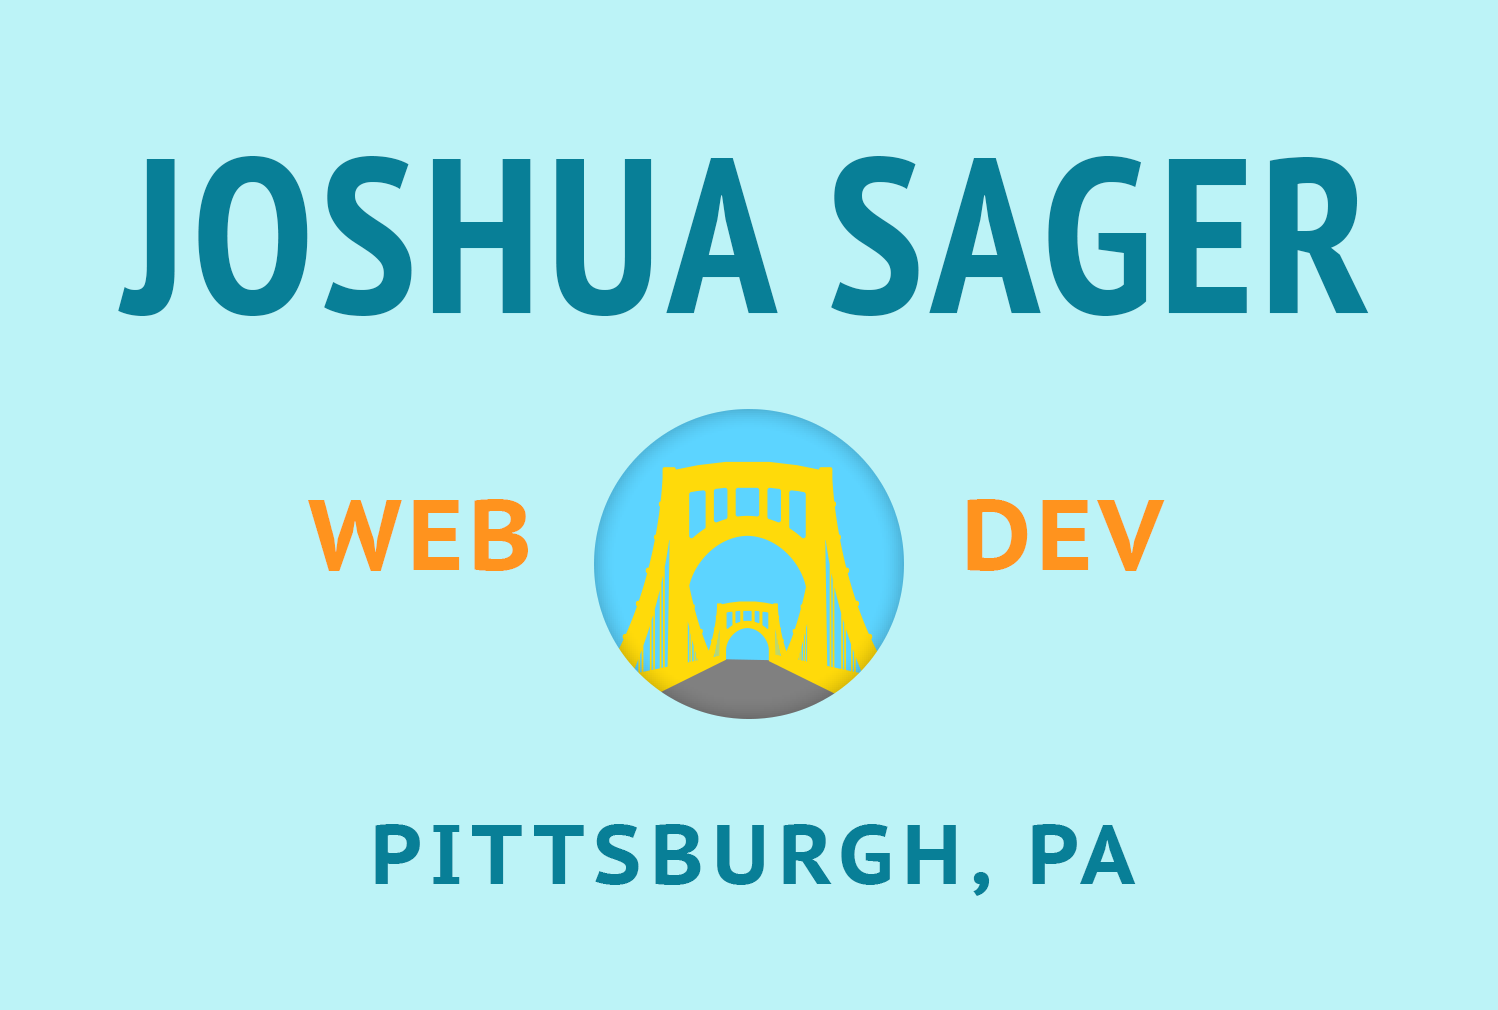 Joshua Sager Web Dev in Pittsburgh, PA